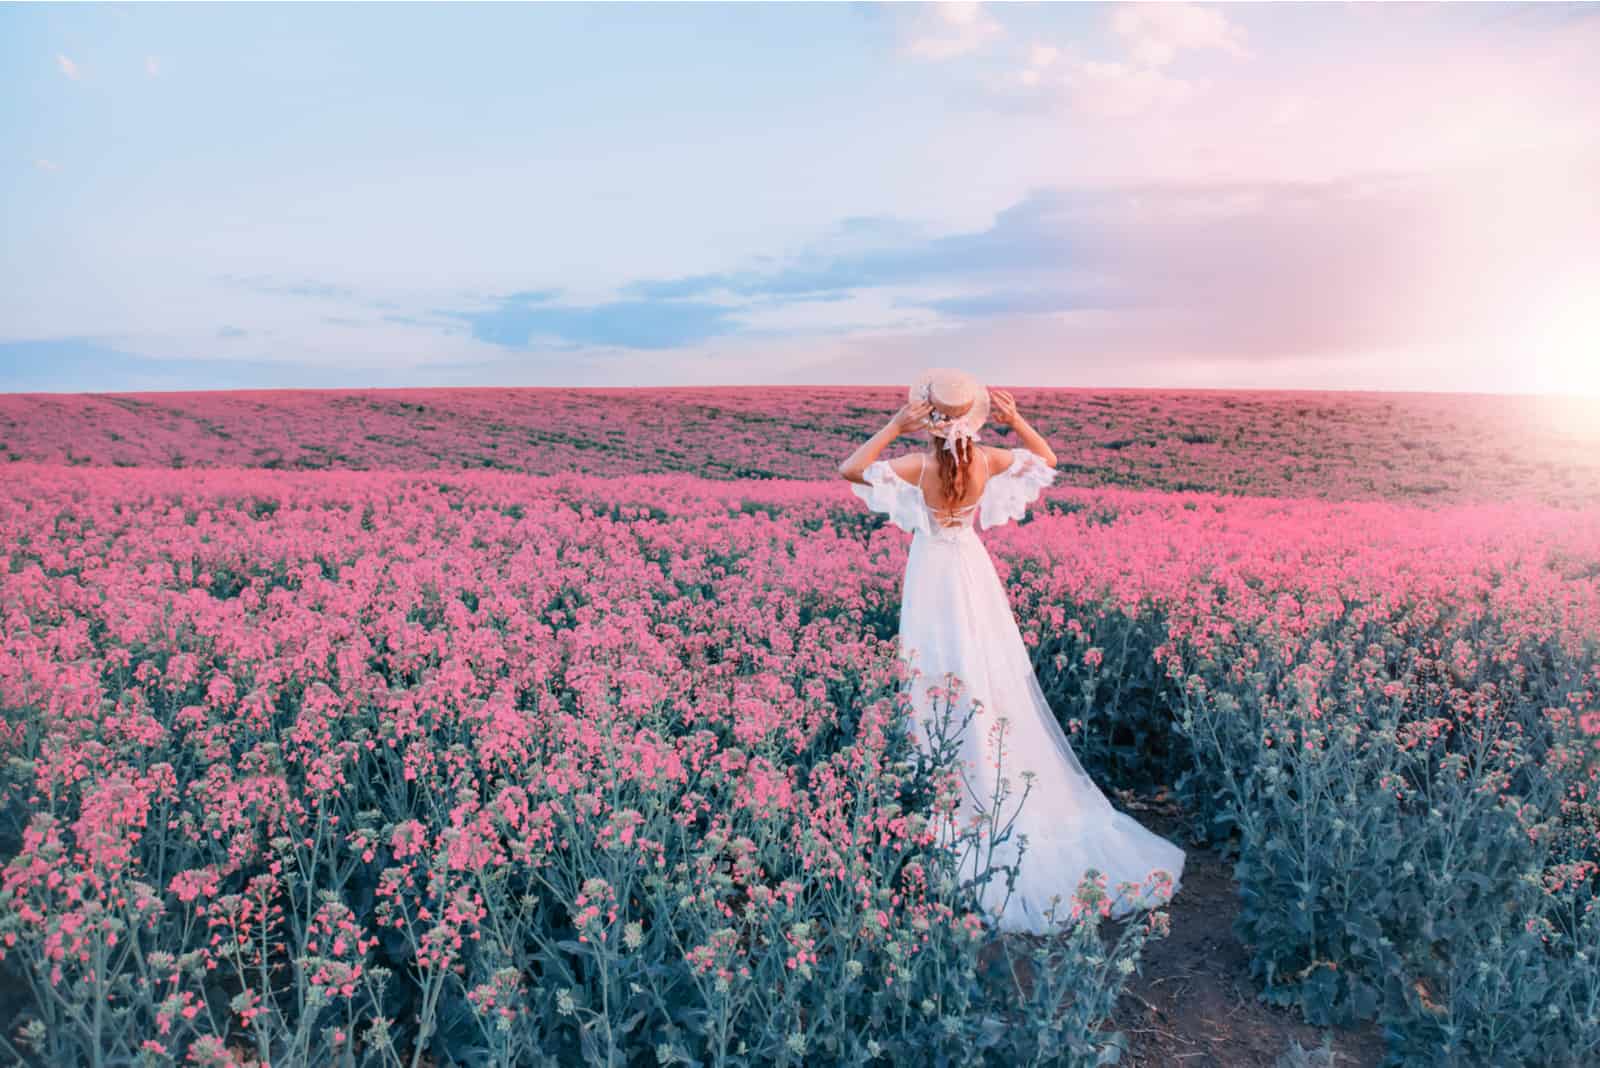 Frau mit rosa Hut steht in einem rosa Blumenfeld